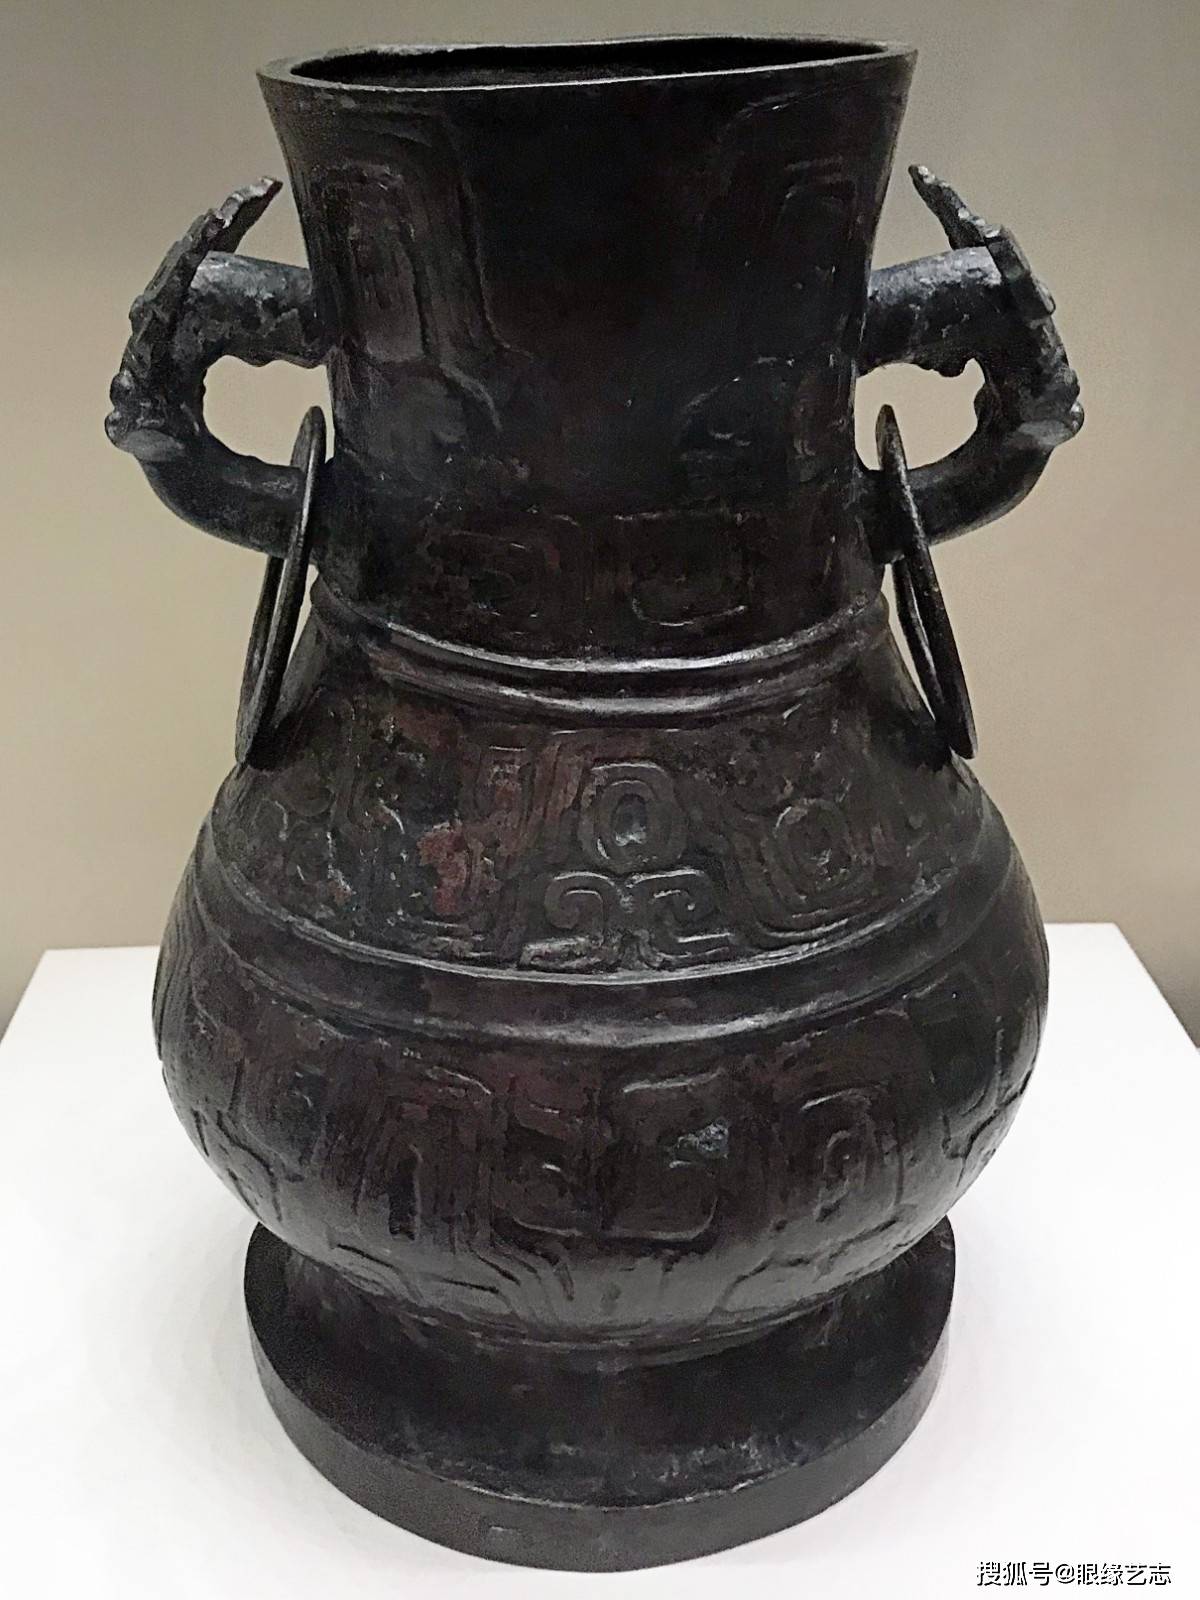 国家博物馆之古代中国基本陈列:春秋战国的青铜食器,礼器与乐器